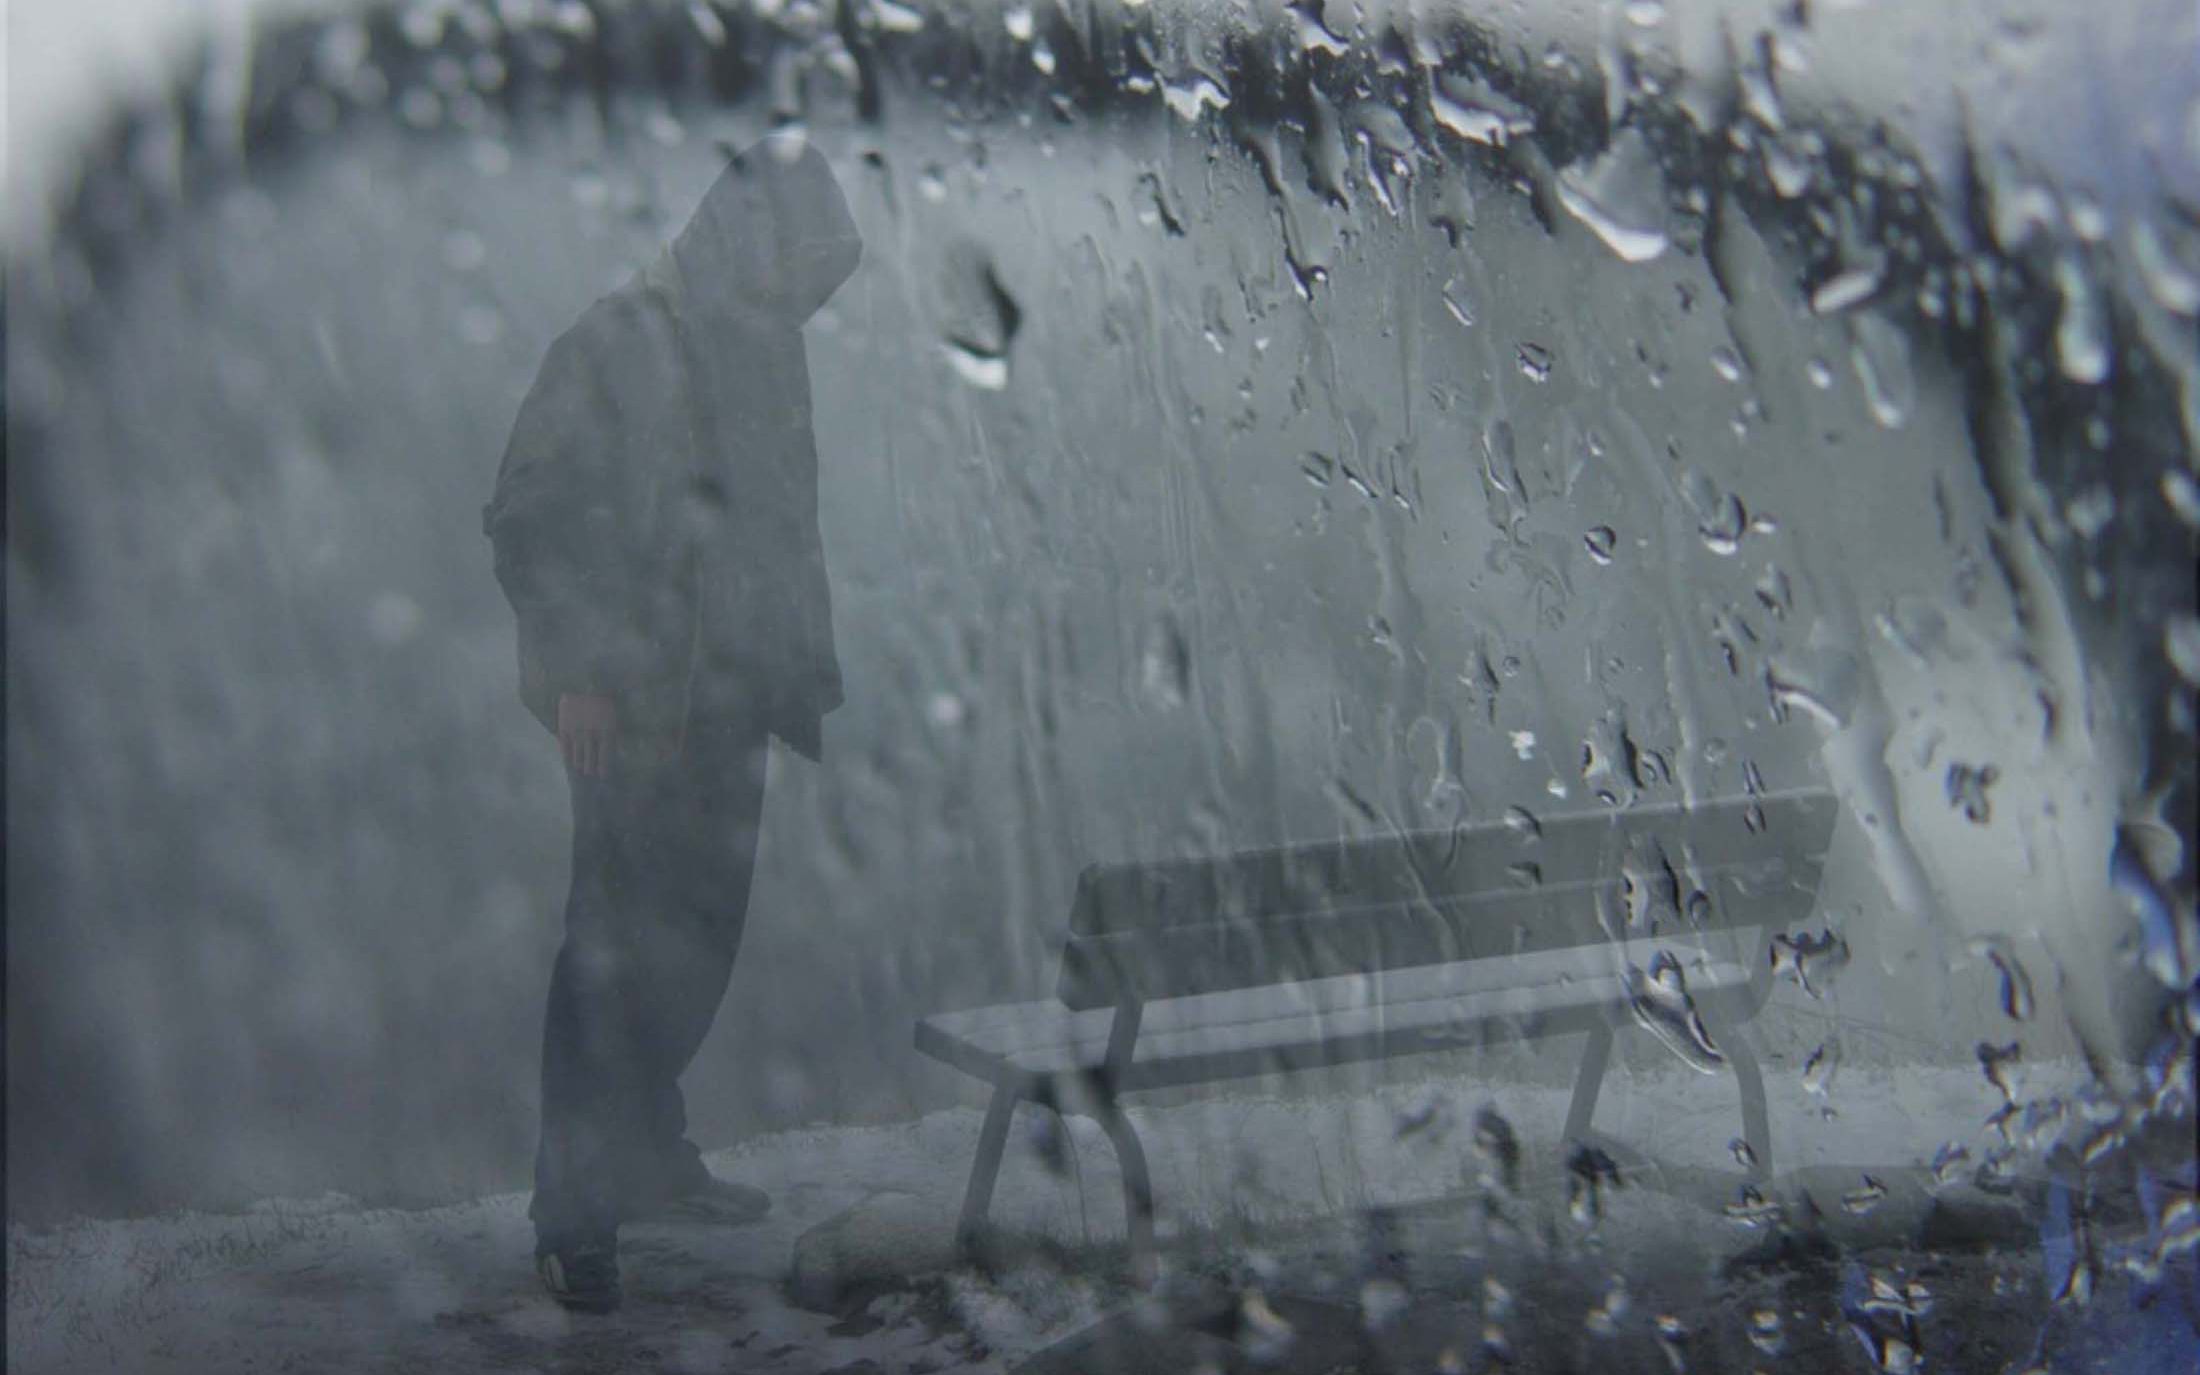 fond d'écran de pluie triste,photographier,photographie monochrome,pluie,noir et blanc,l'eau